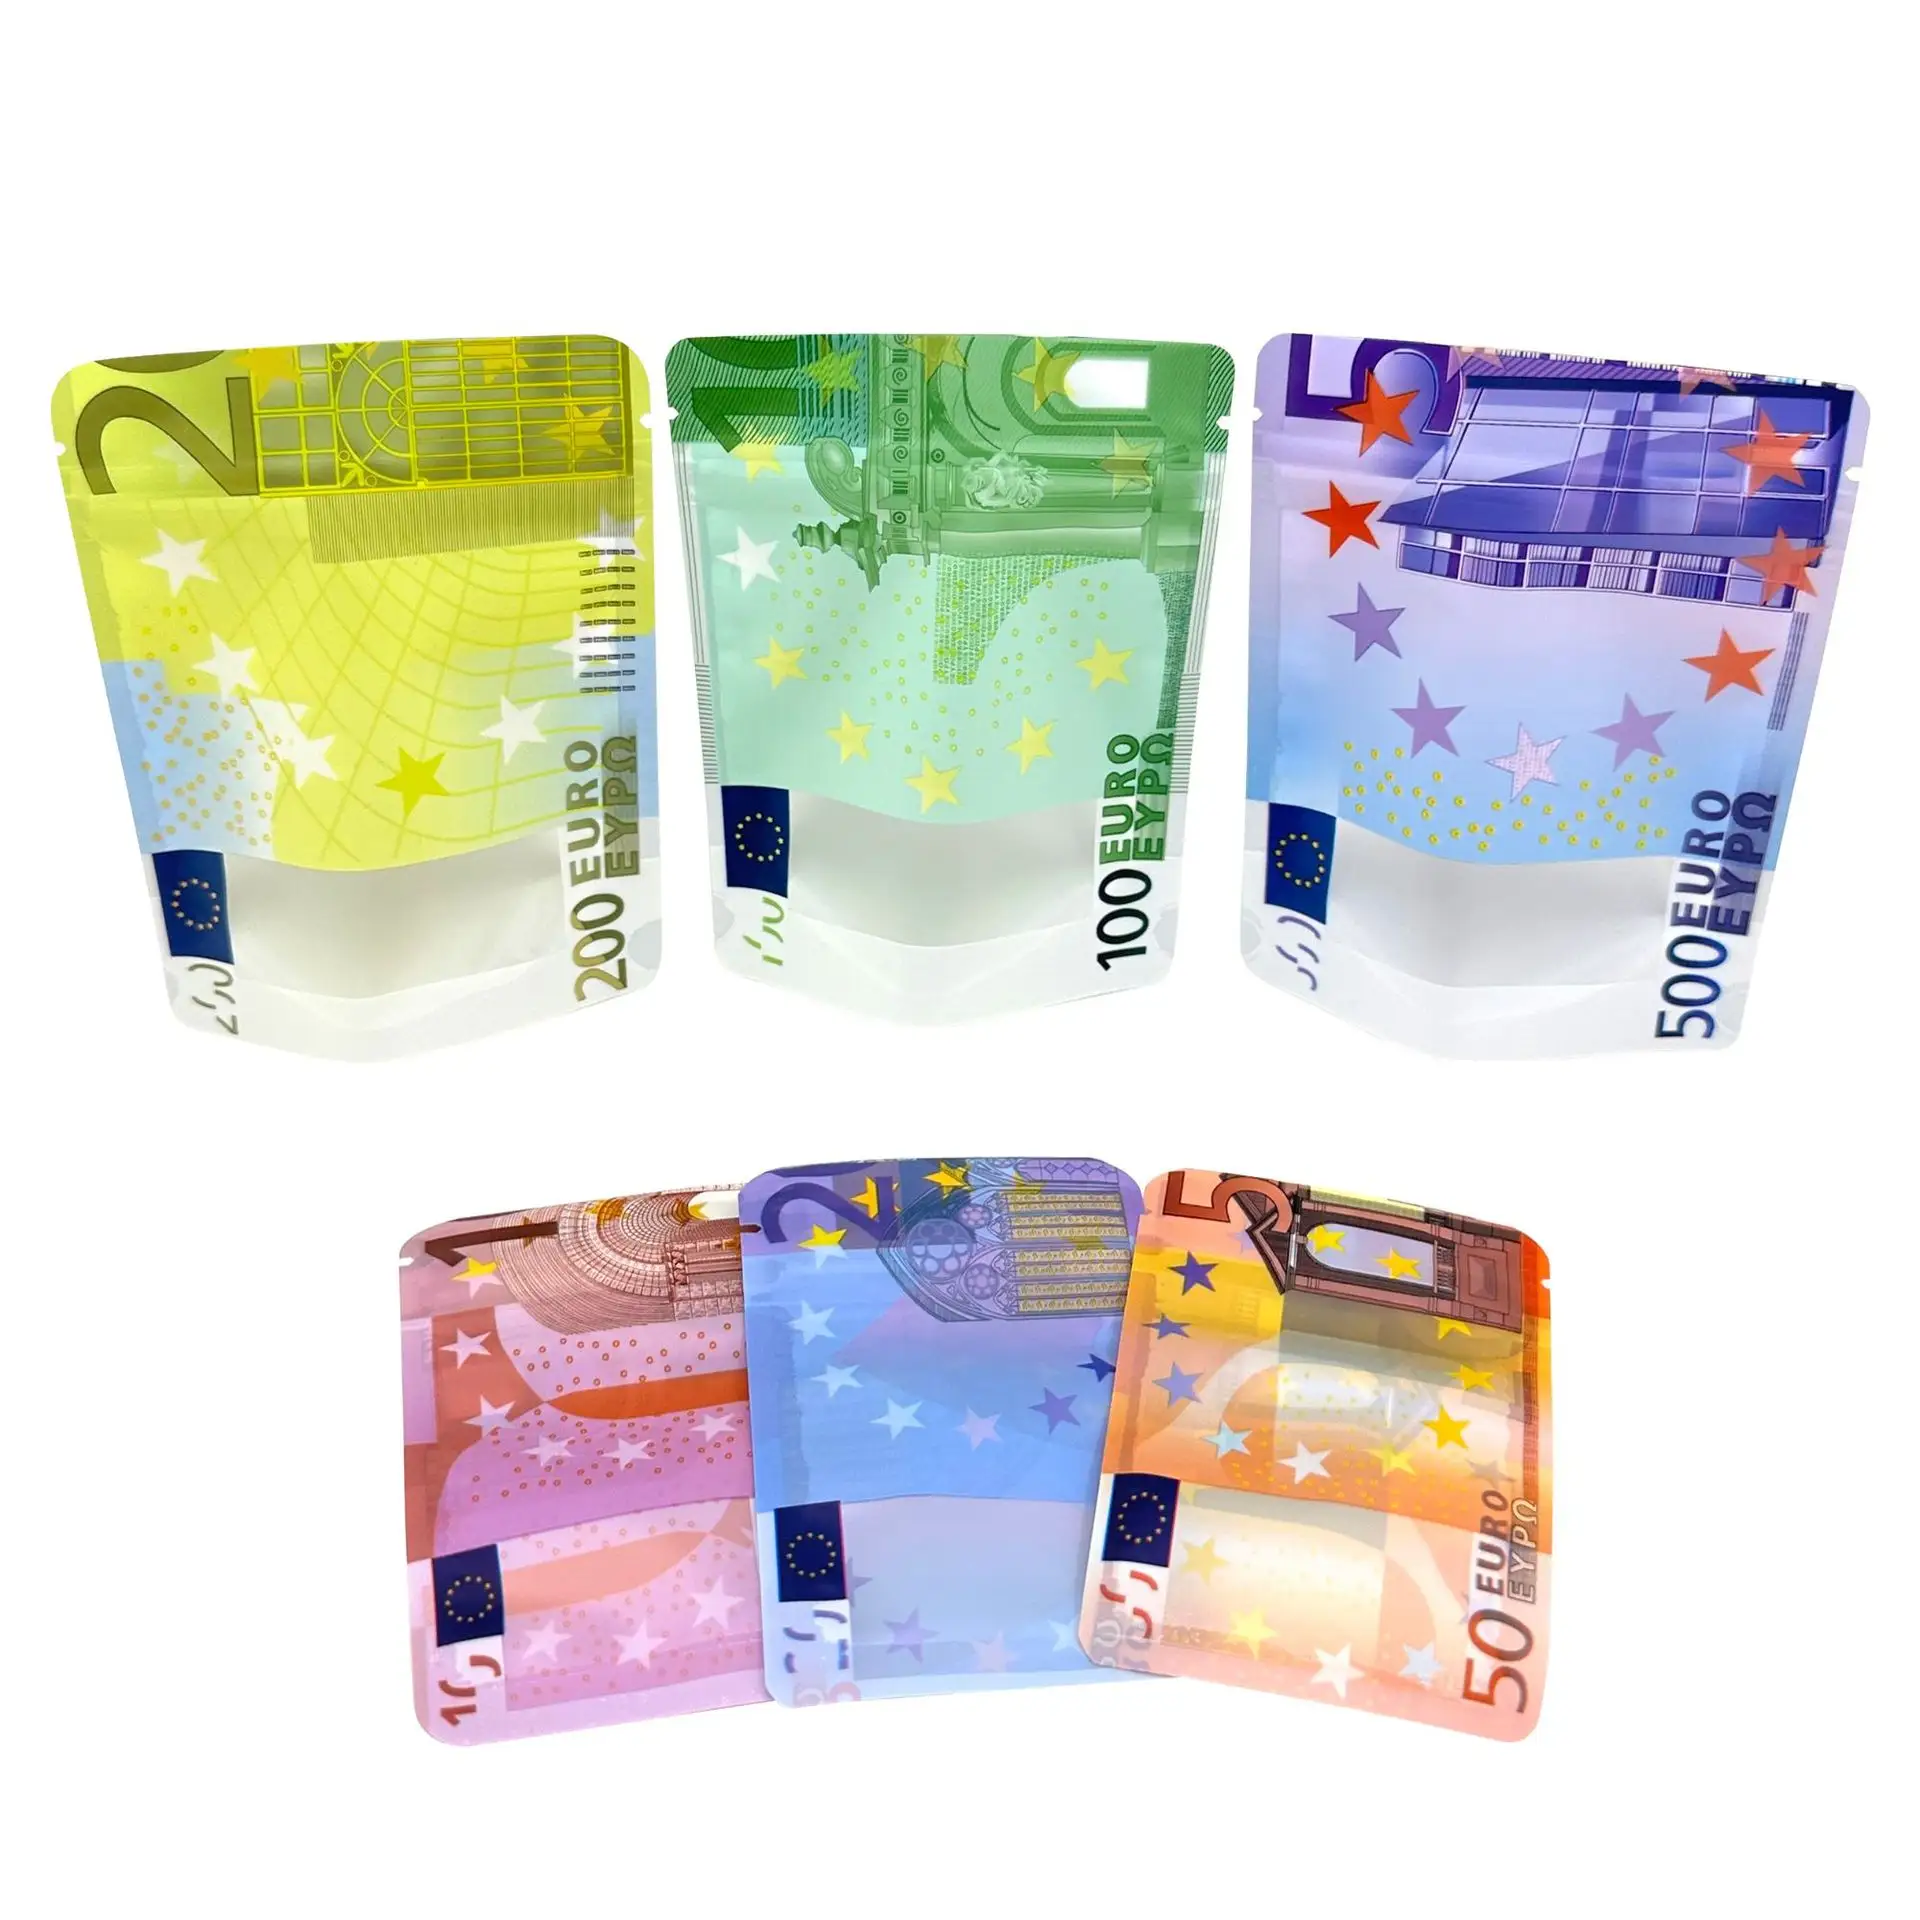 Segno del dollaro In borsa modello di denaro In Euro 2g 3.5g 420 a prova di odore richiudibile cerniera mylar sacchetti di plastica